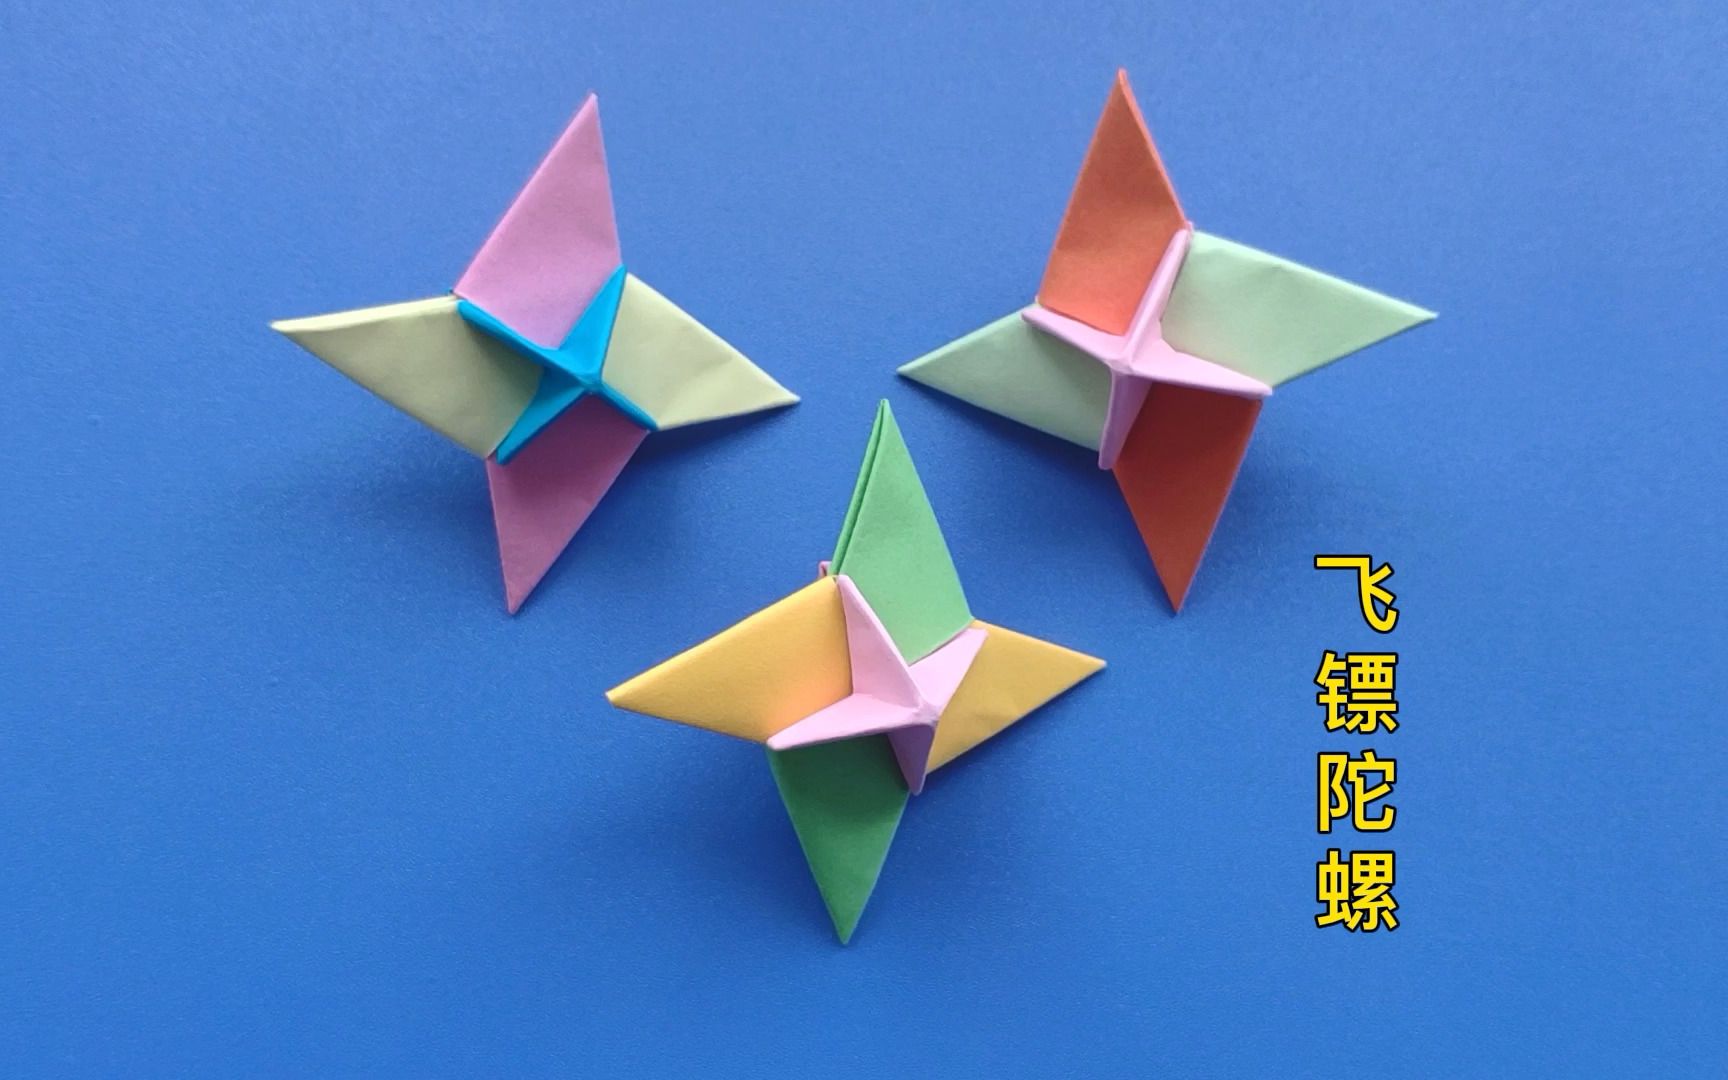 陀螺折纸方法,手工制作简单好玩的飞镖陀螺